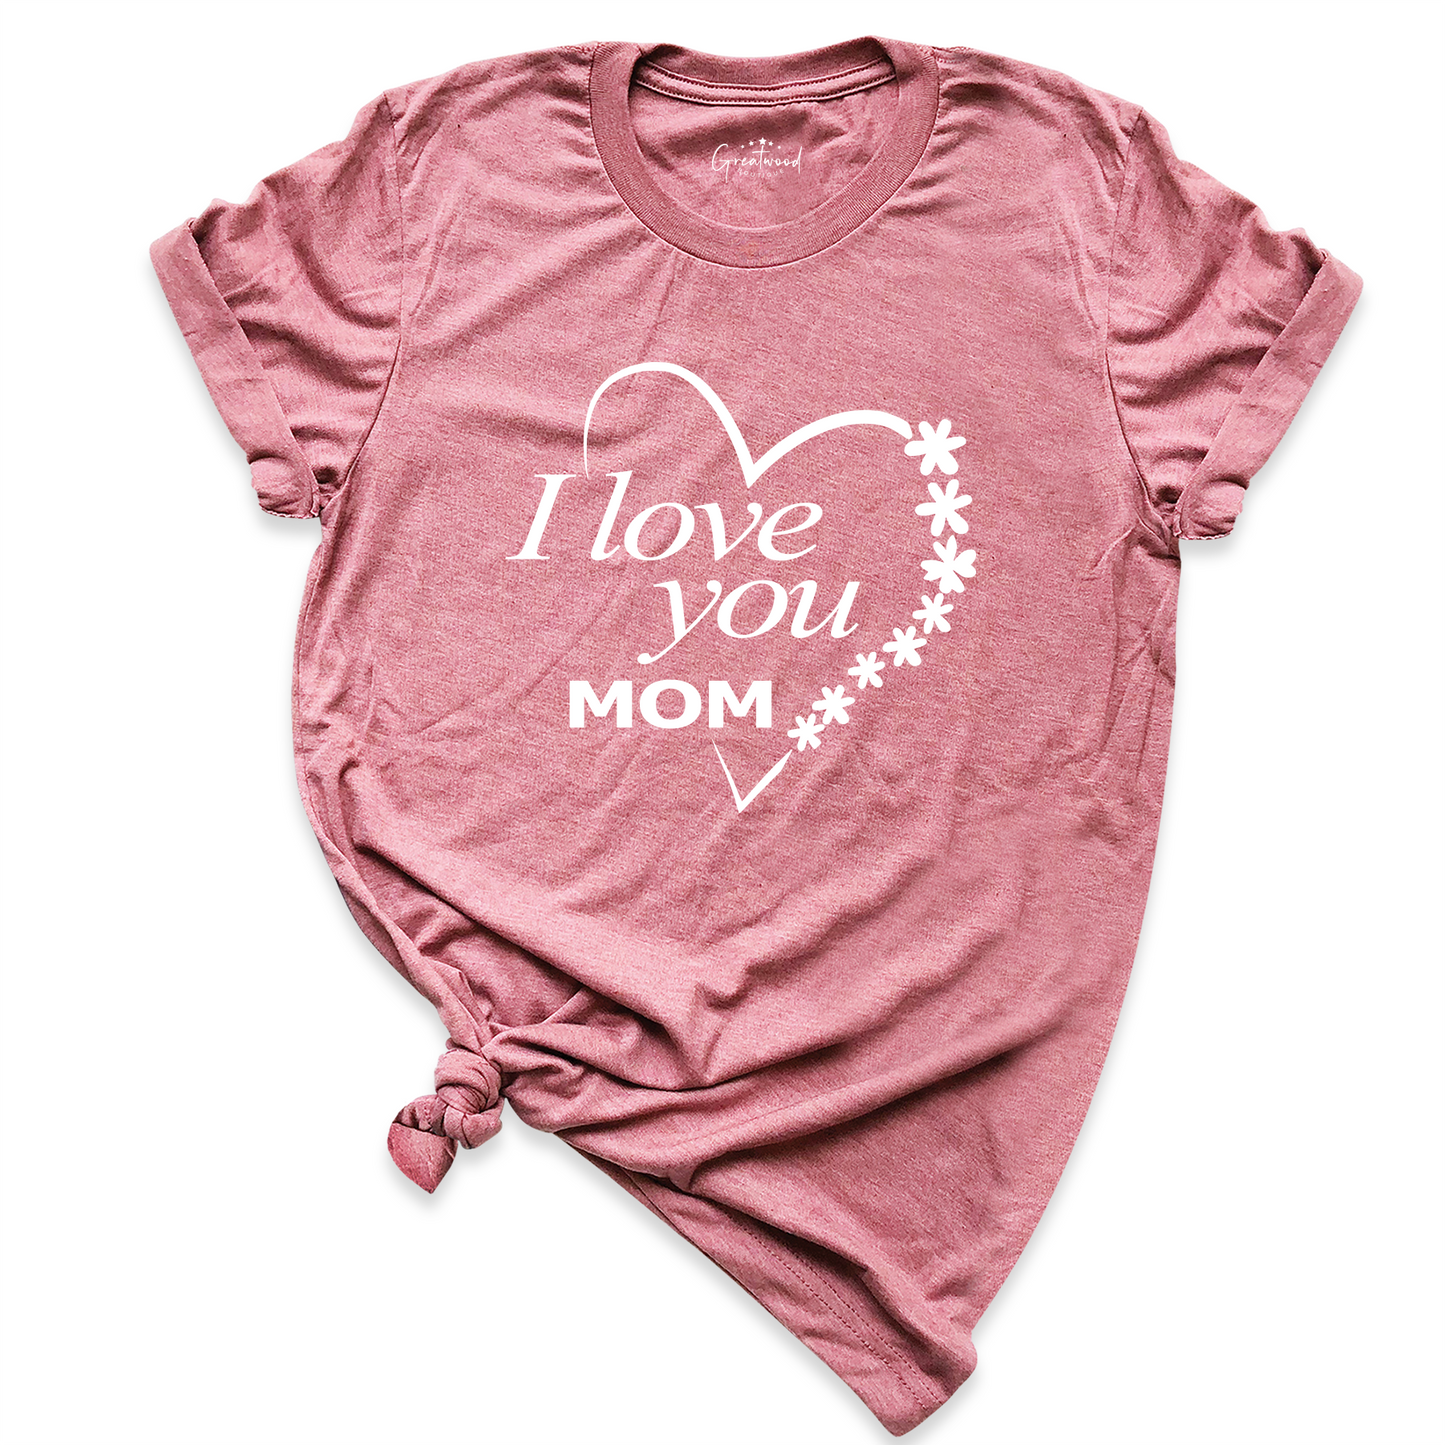 I Love You Mom Shirt